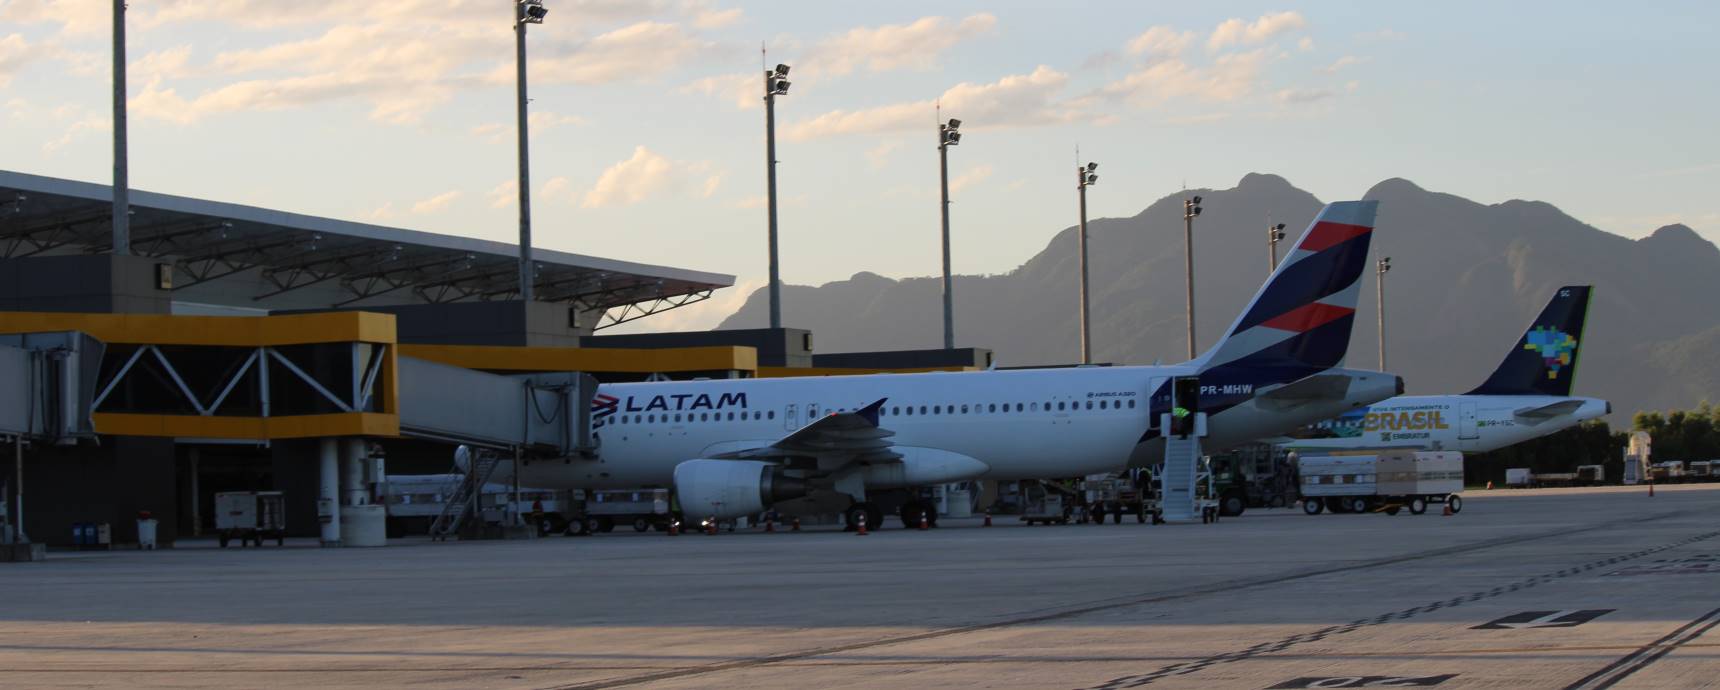 Feriadão prognostiziert ein Wachstum der Zahl der Flüge am Flughafen Vitória um 57 %